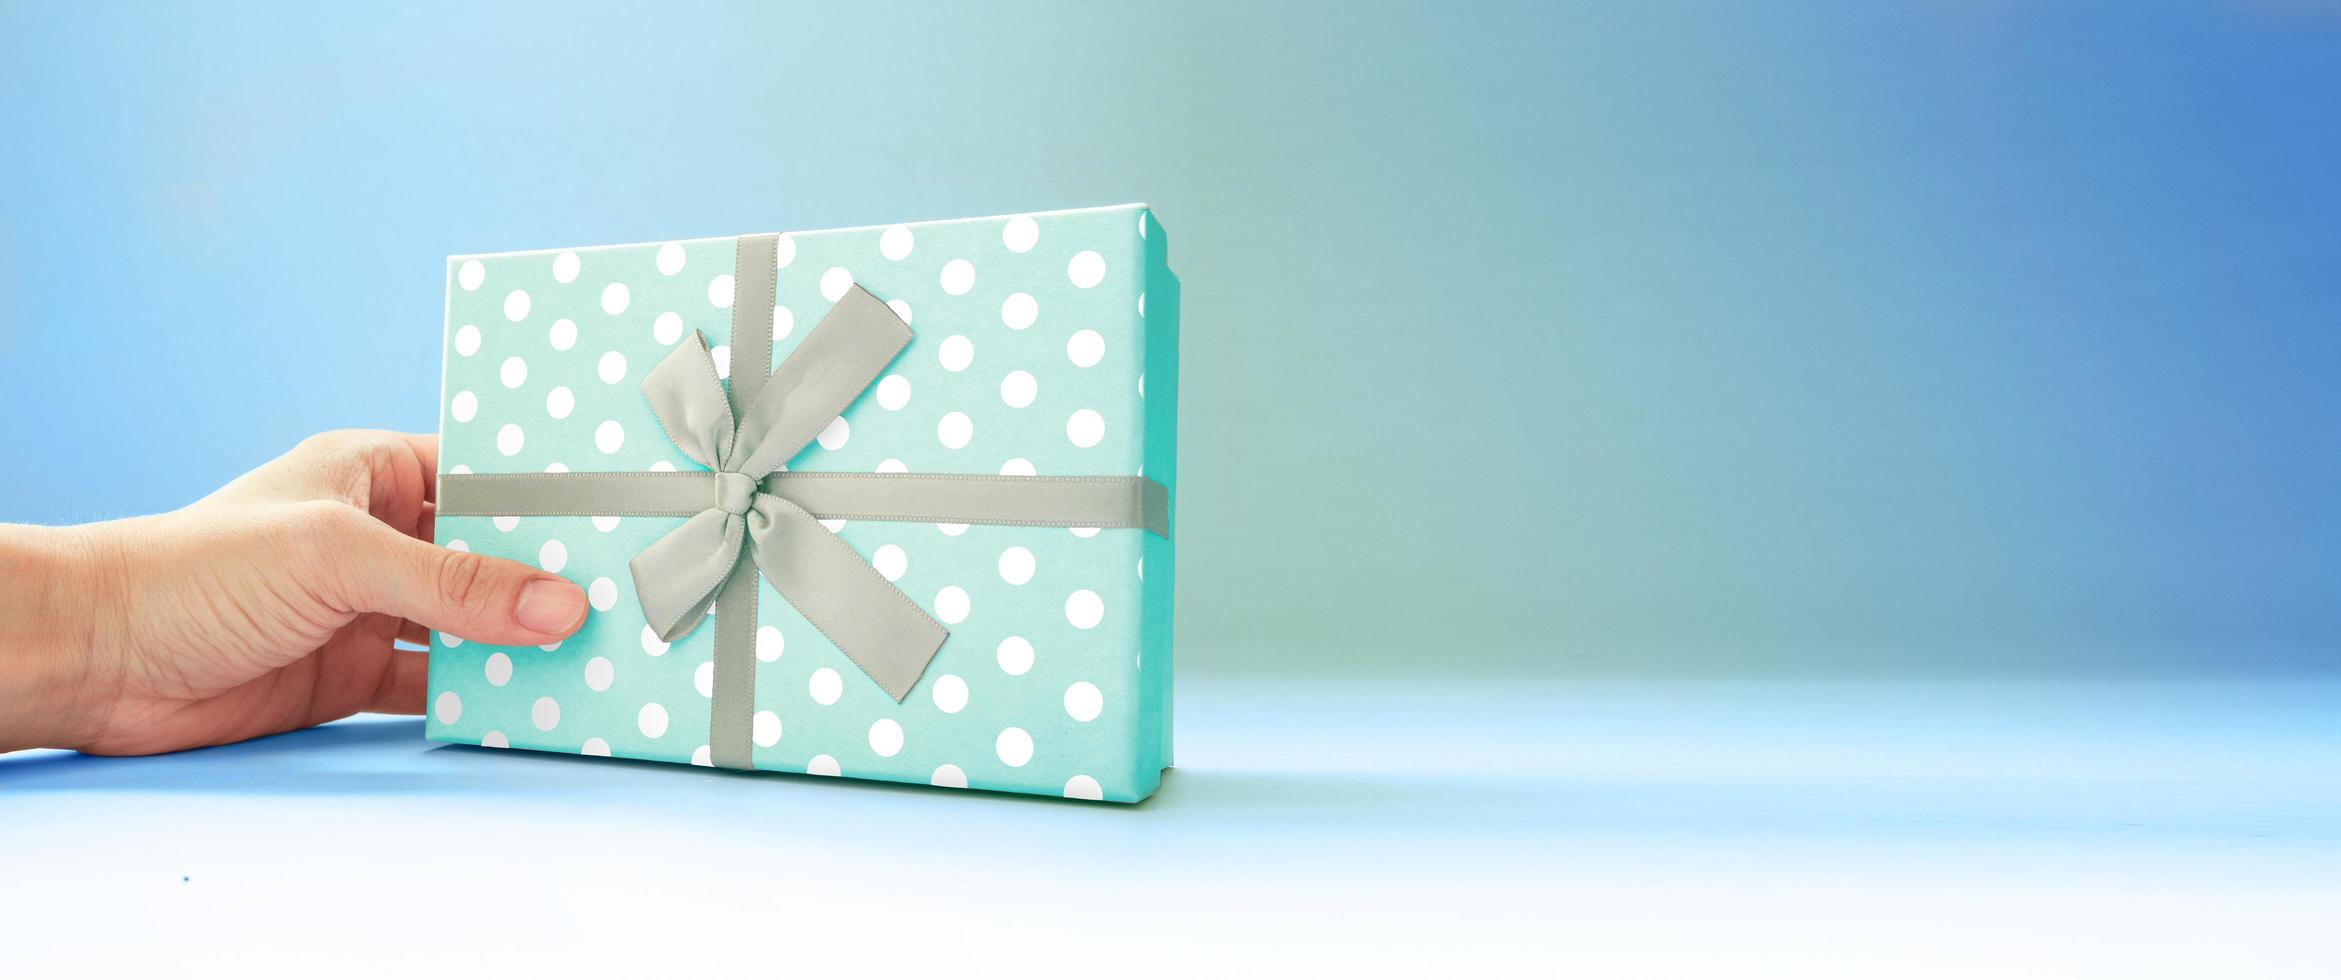 blaue Geschenkbox für Vatertag, Muttertag, Weihnachten, Geburtstag. foto